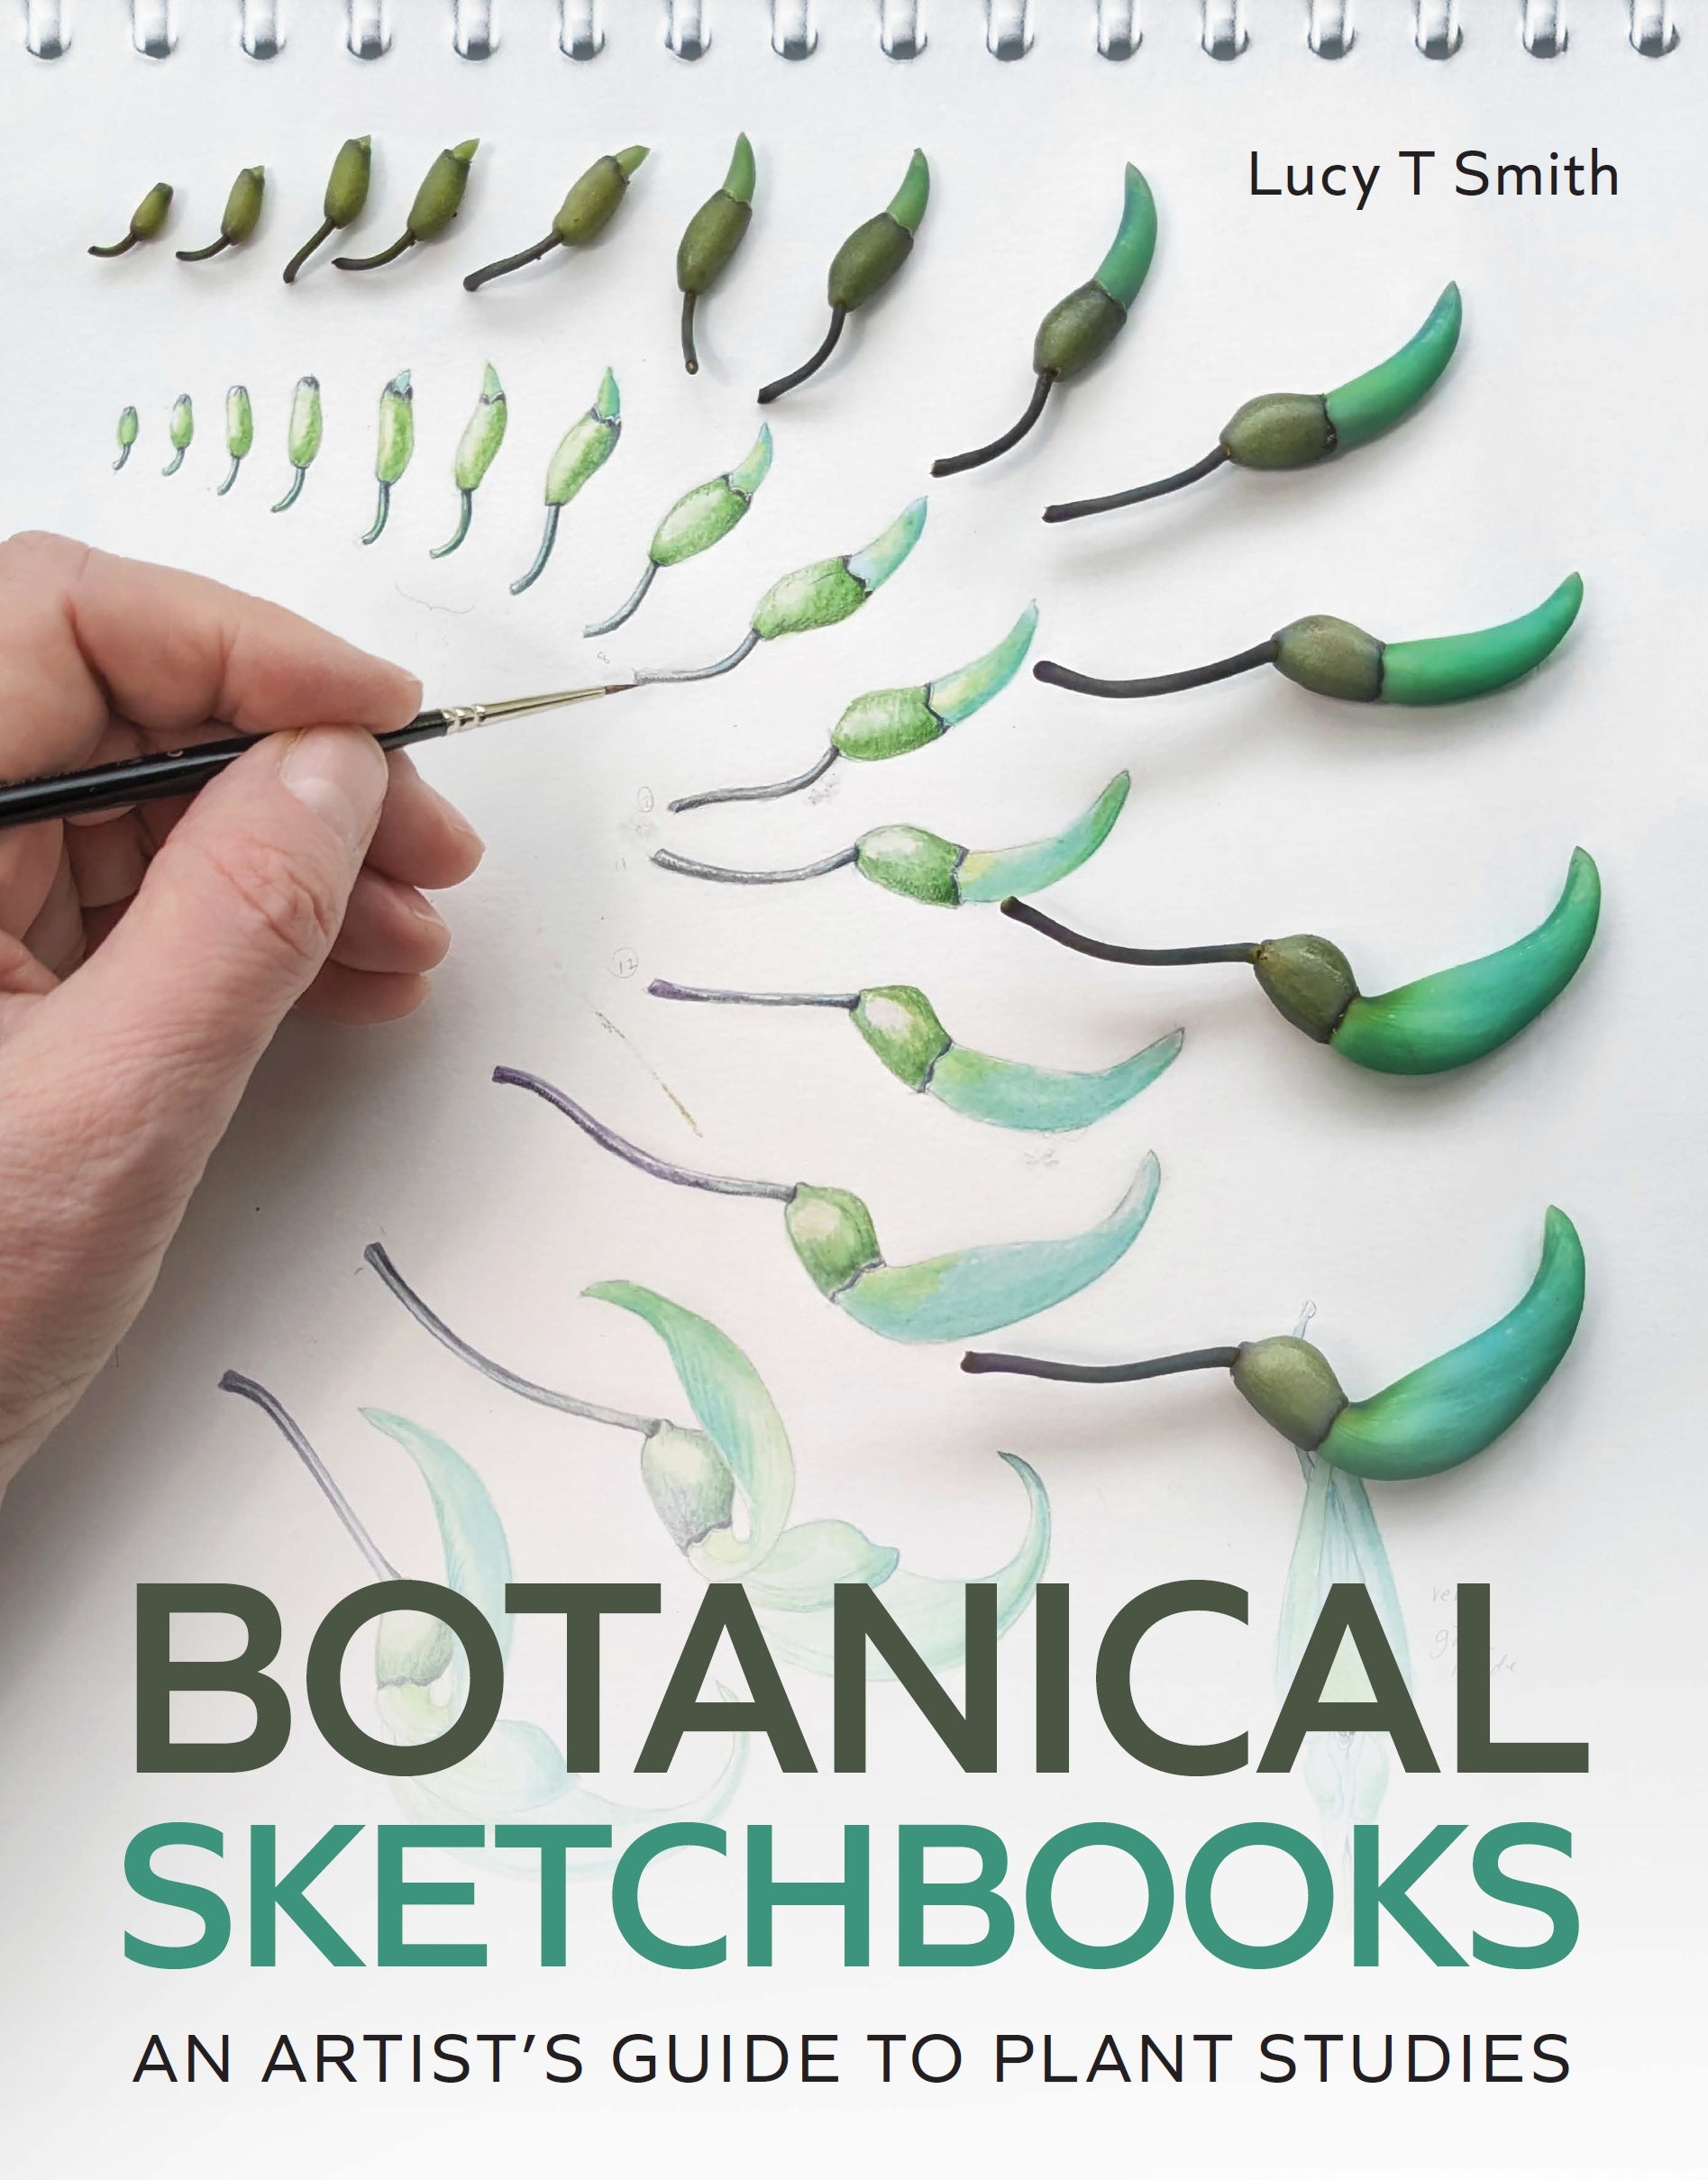 Botanical Sketchbooks